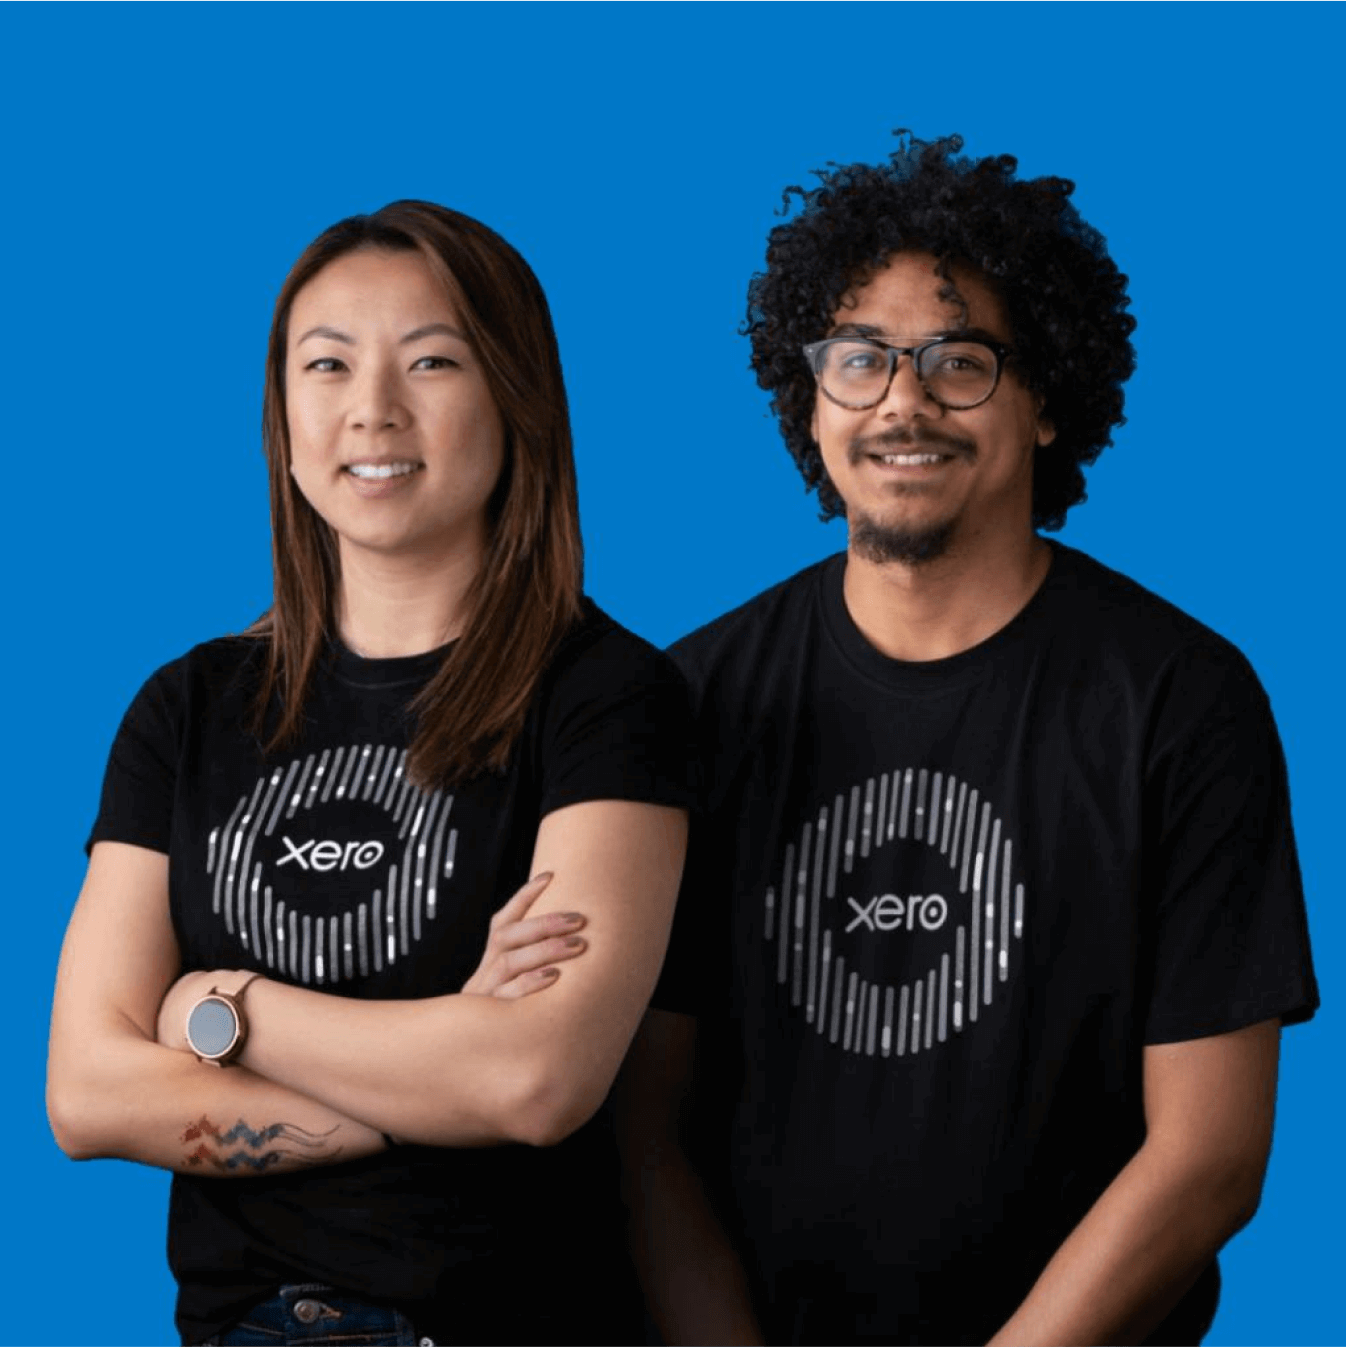 Two smiling Xero employees wearing black Xero tee-shirts.